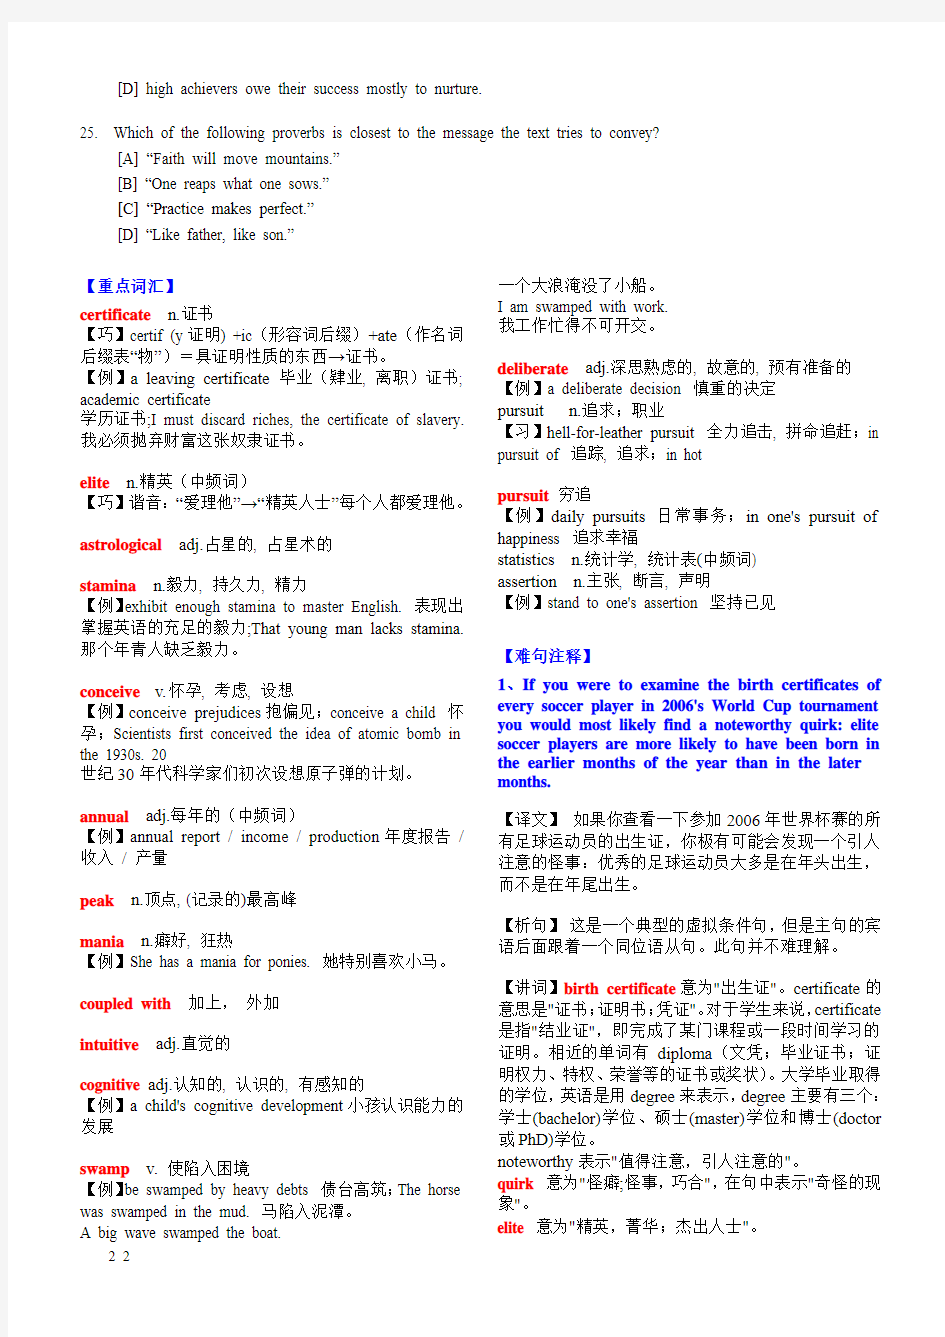 2007考研英语阅读真题解析和全文翻译(1994-2012)